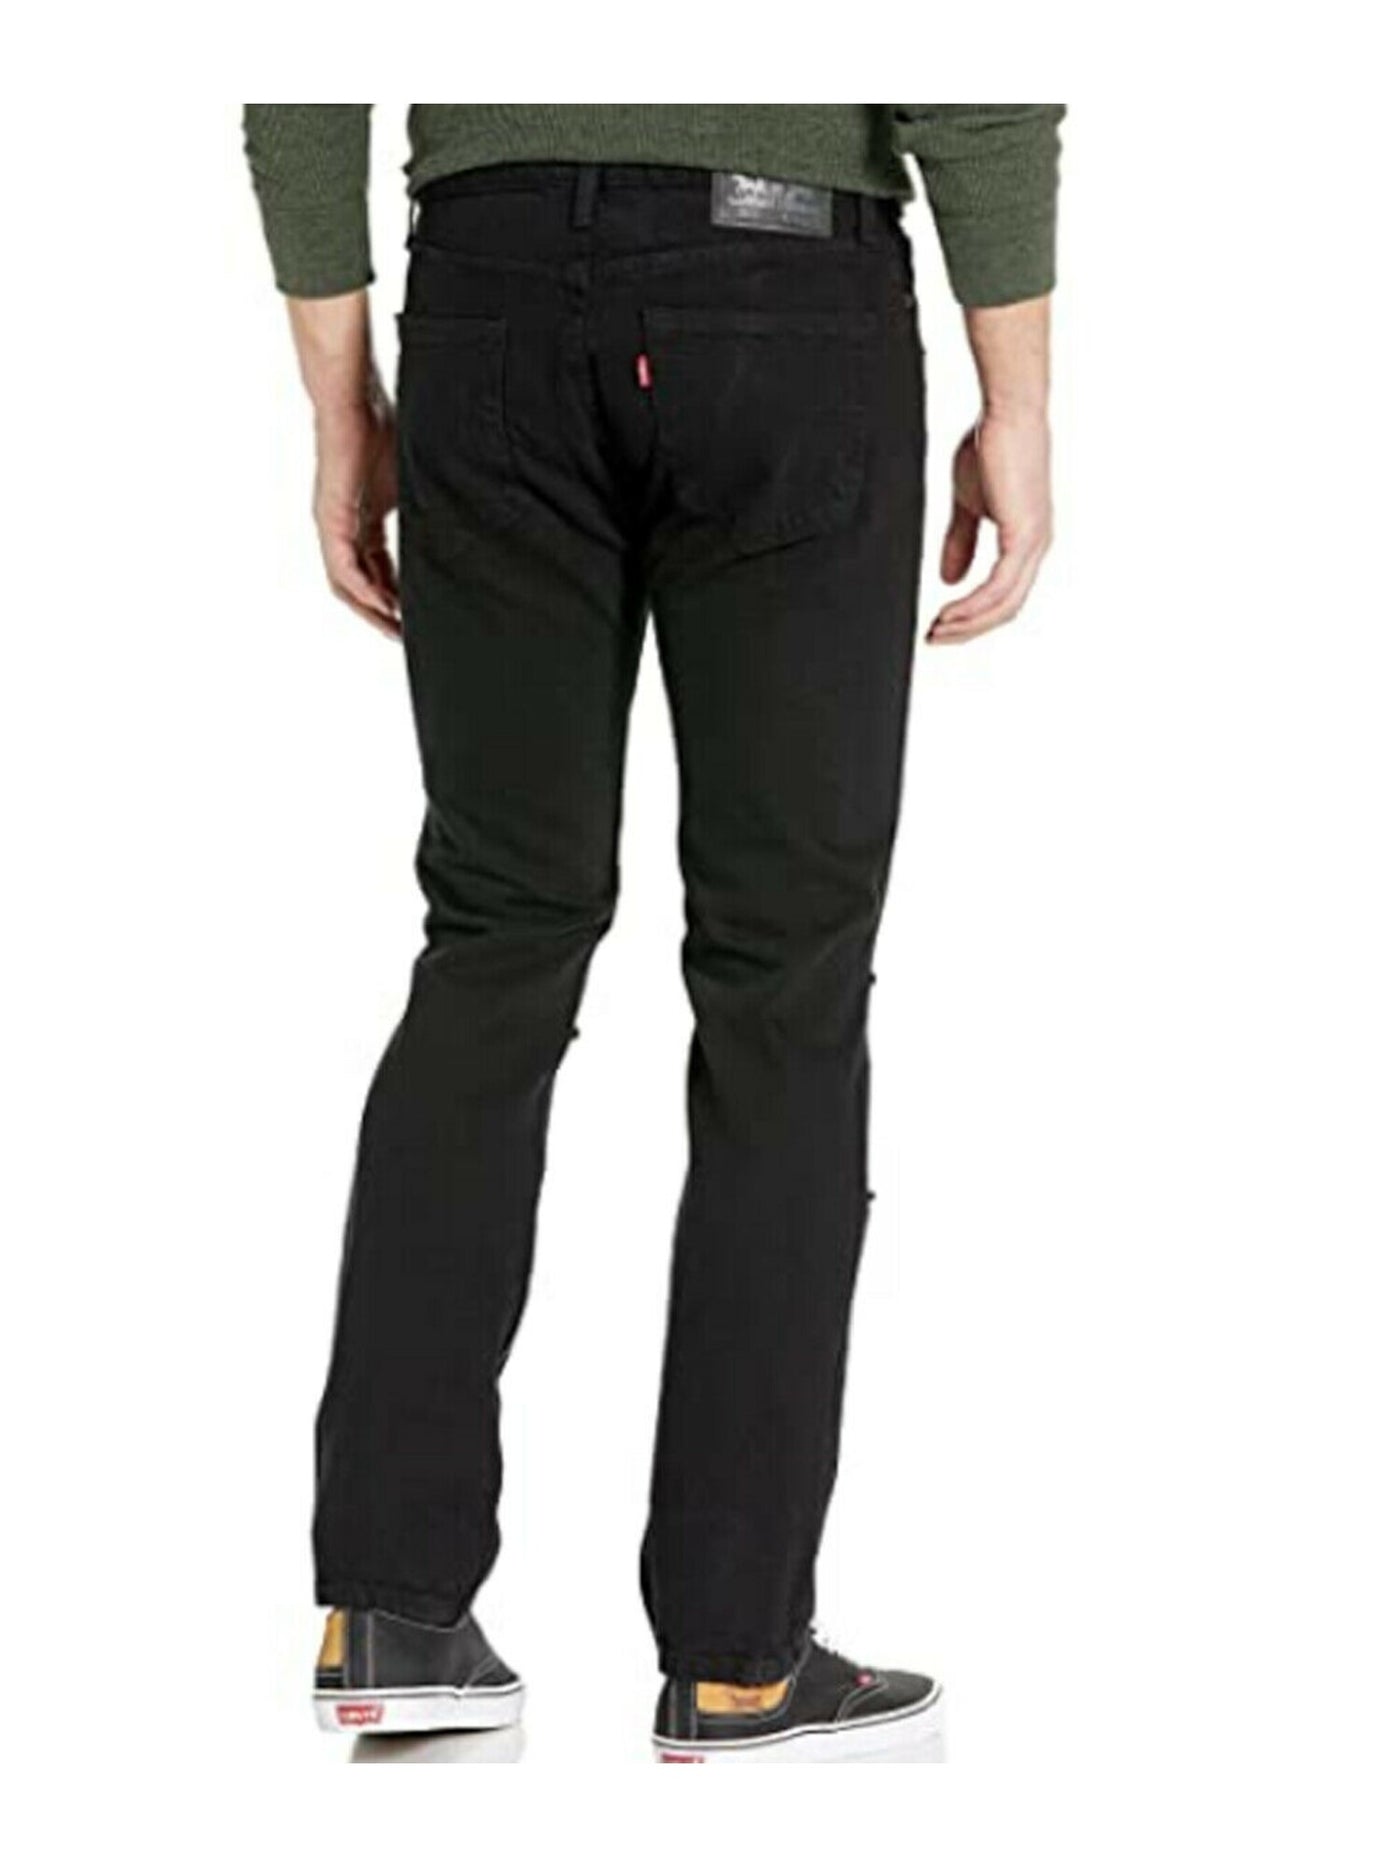 LEVI STRAUSS & CO Mens Black Tapered, Slim Fit Stretch Denim Jeans W31/ L30